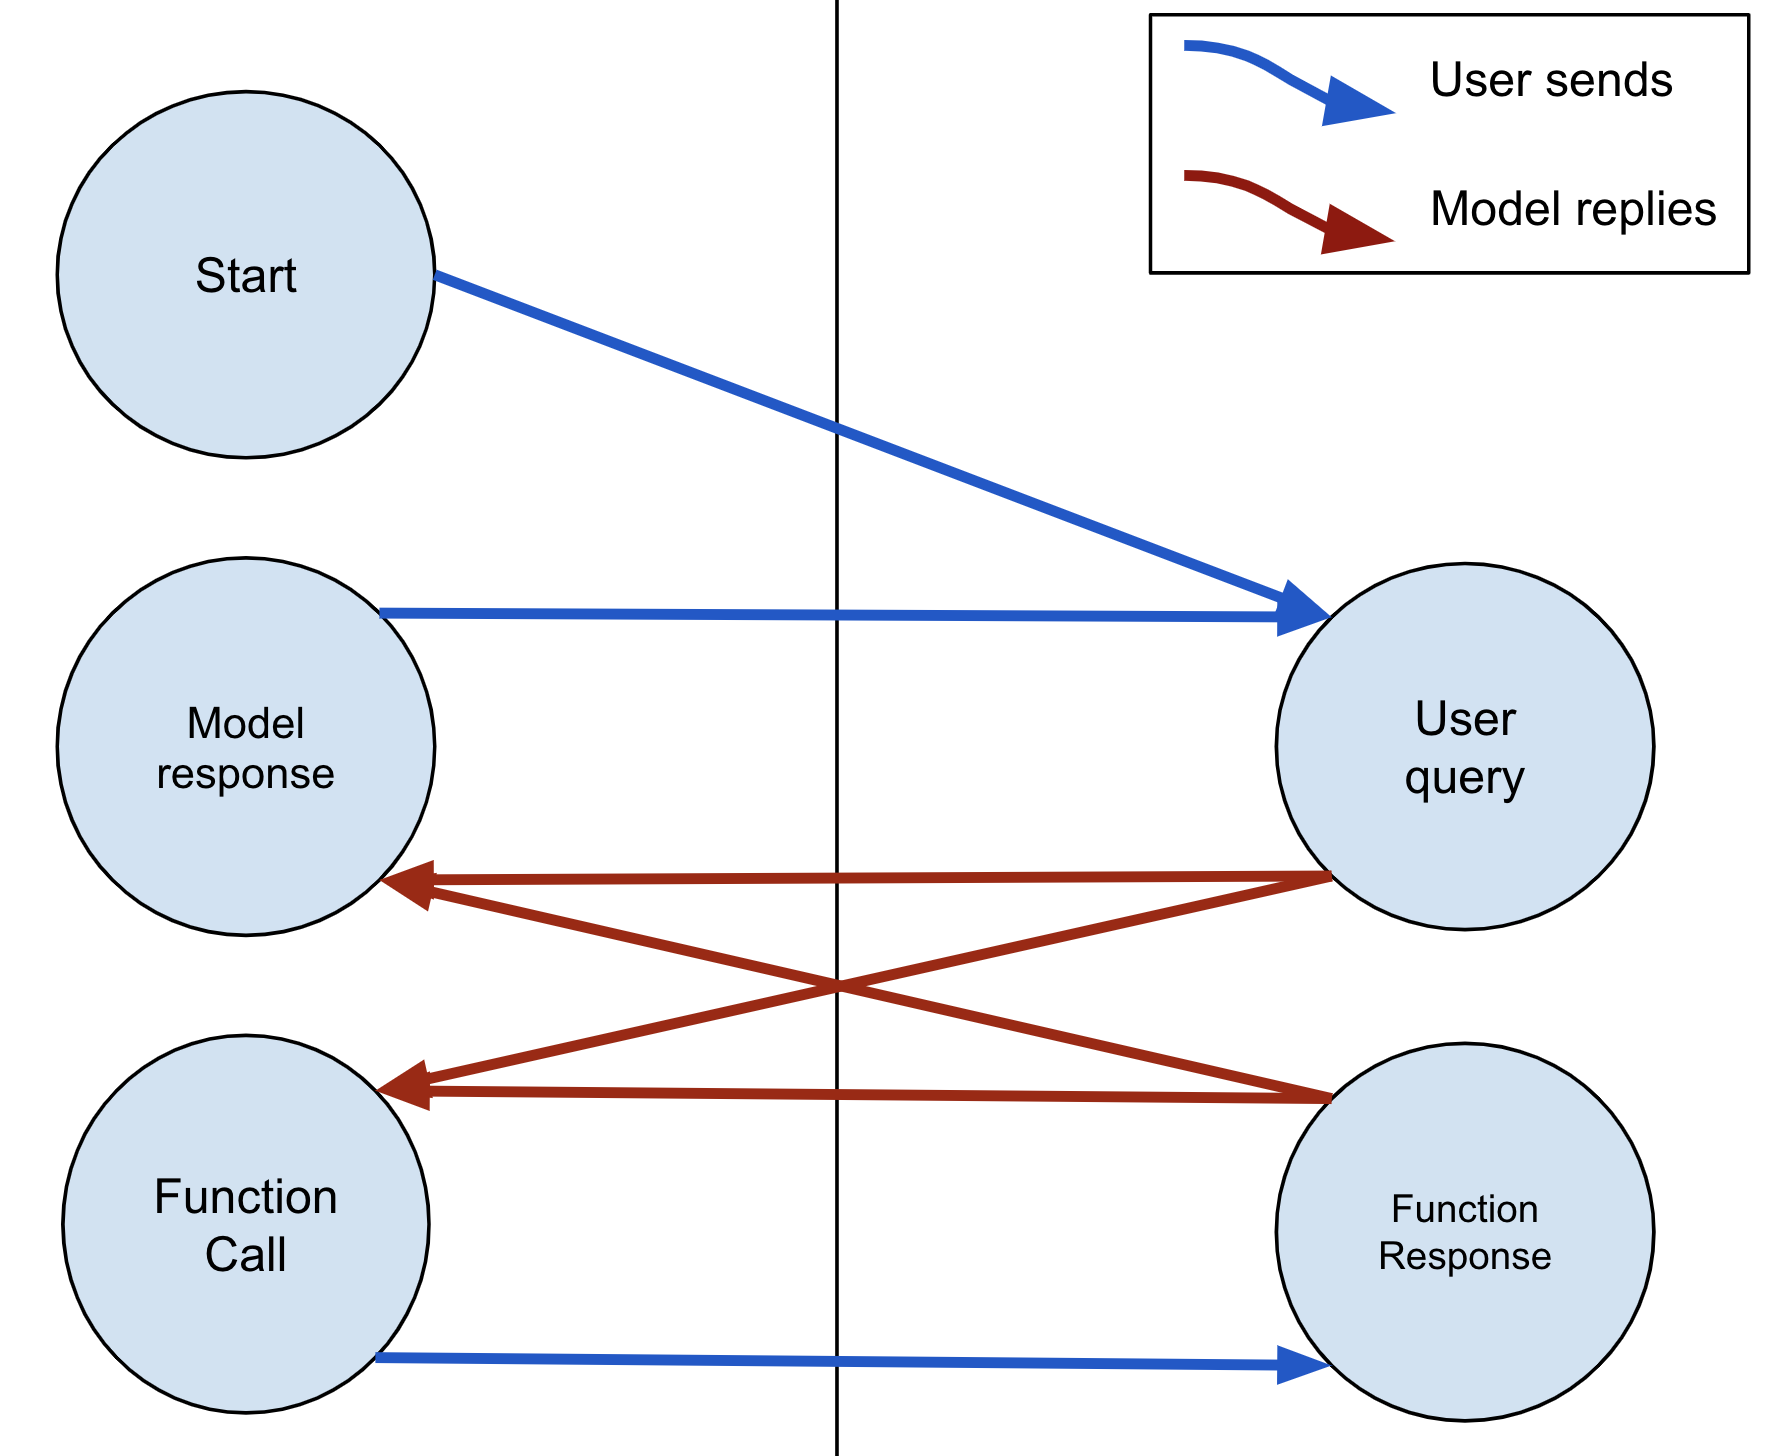 模型始终可以使用文本或 FunctionCall 进行回复。如果模型发送了 FunctionCall，用户必须使用 FunctionResponse 进行回复